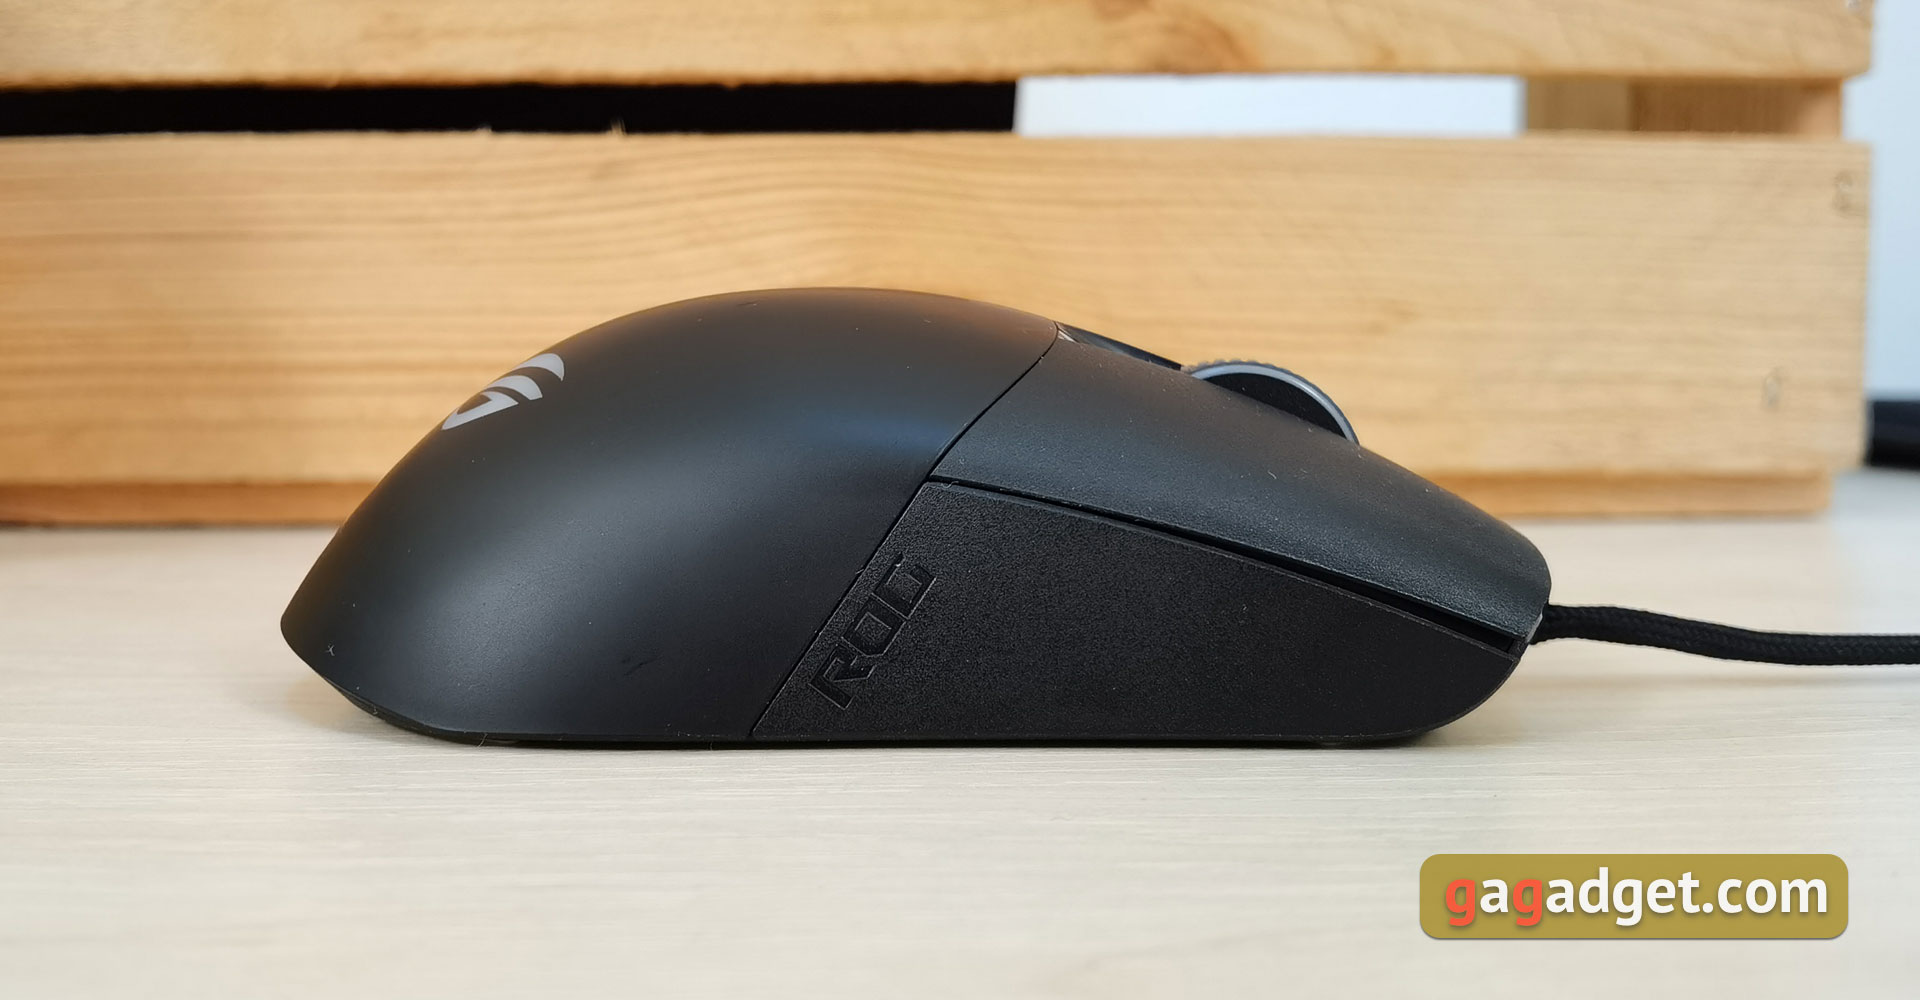 Recenzja ASUS ROG Keris: Ultralekka gamingowa mysz z szybkim czujnikiem -9